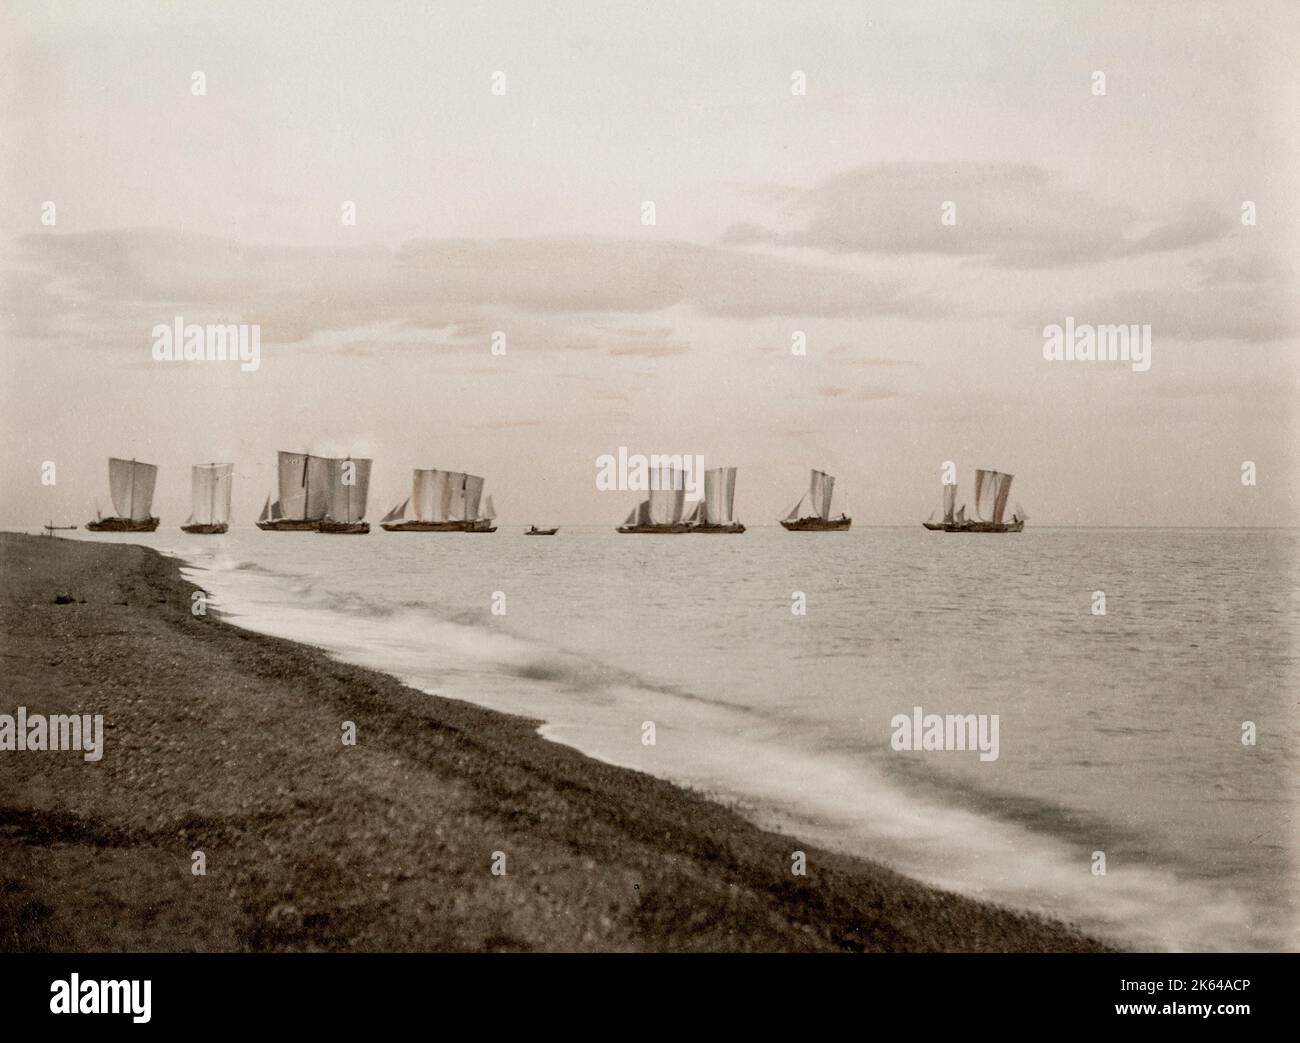 Fotografia d'epoca del XIX secolo: Gruppo di navi, barche a vela offshore, Giappone, circa 1880 Foto Stock